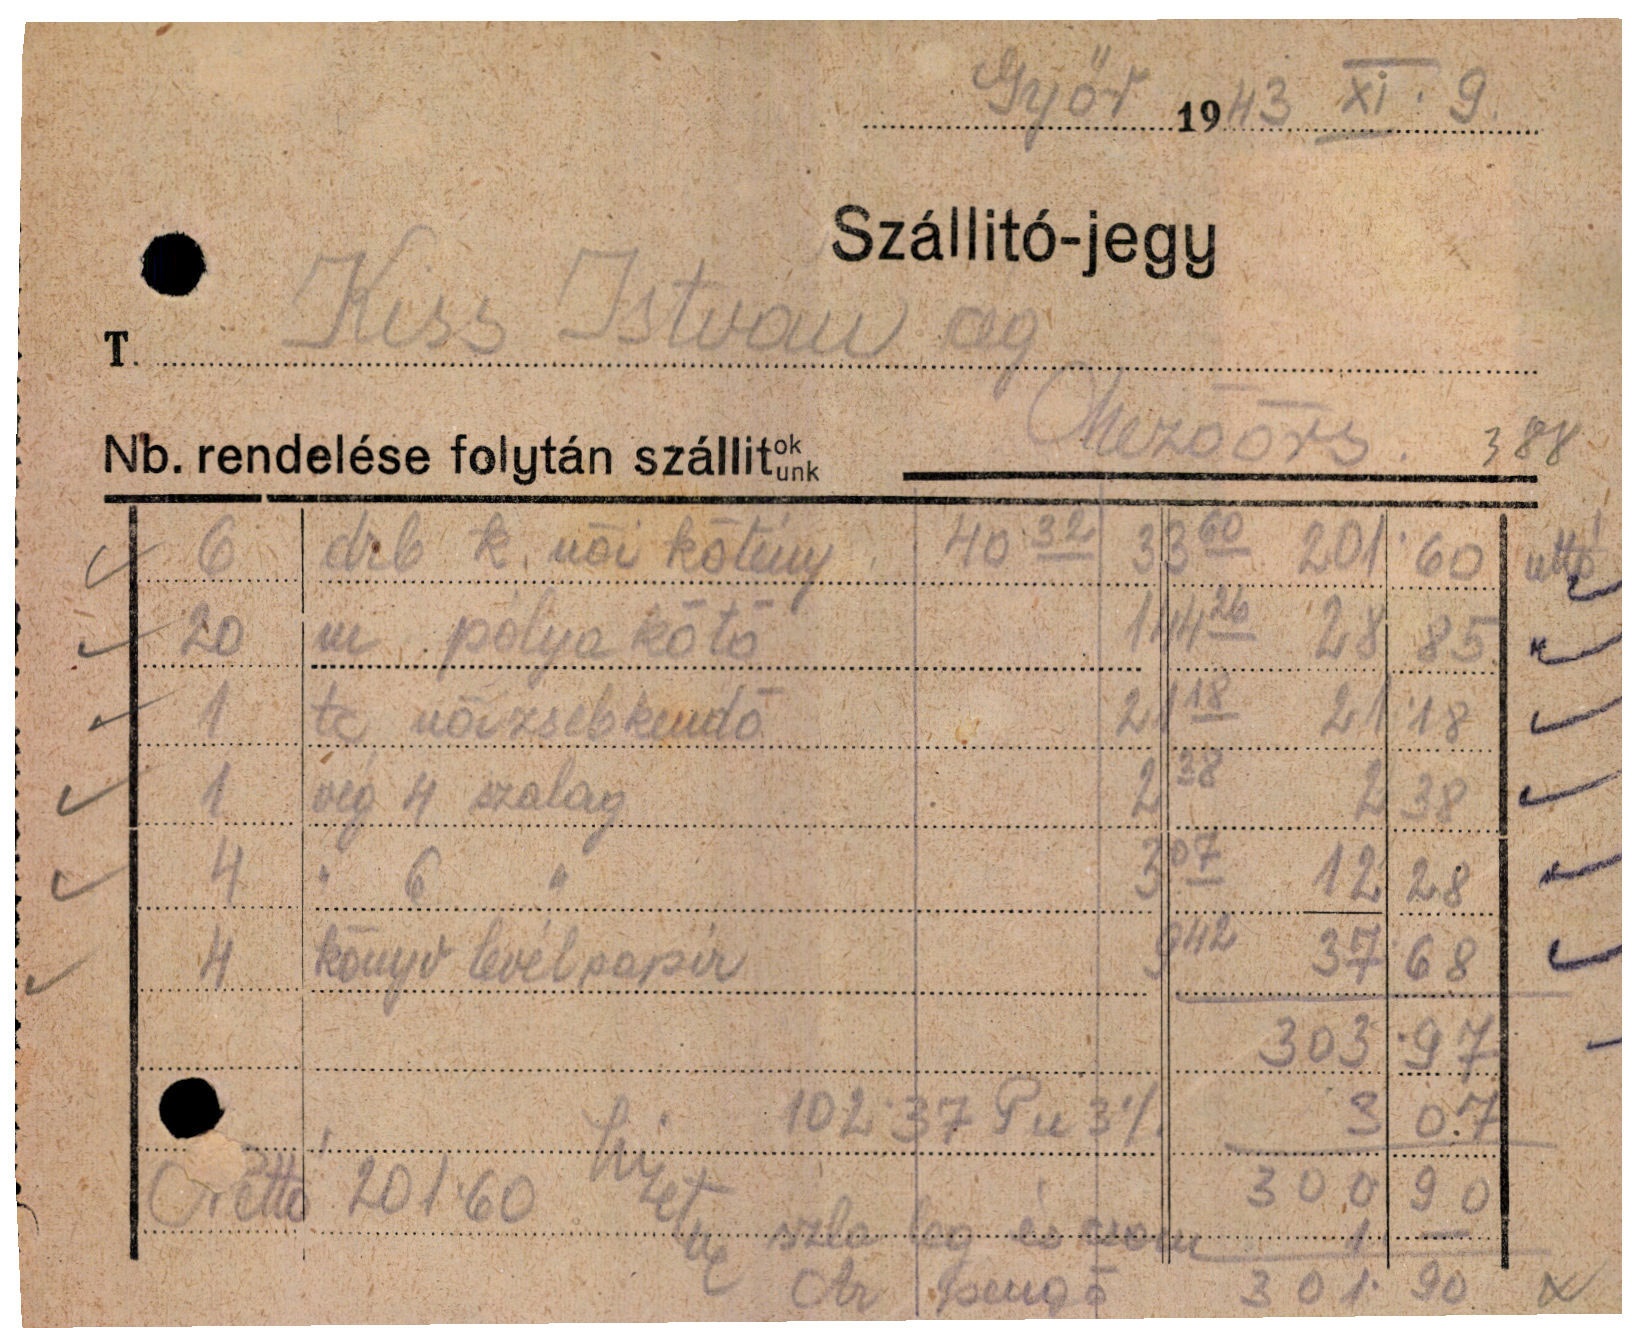 Bogár István rövidáru-nagykereskedő (Magyar Kereskedelmi és Vendéglátóipari Múzeum CC BY-NC-SA)